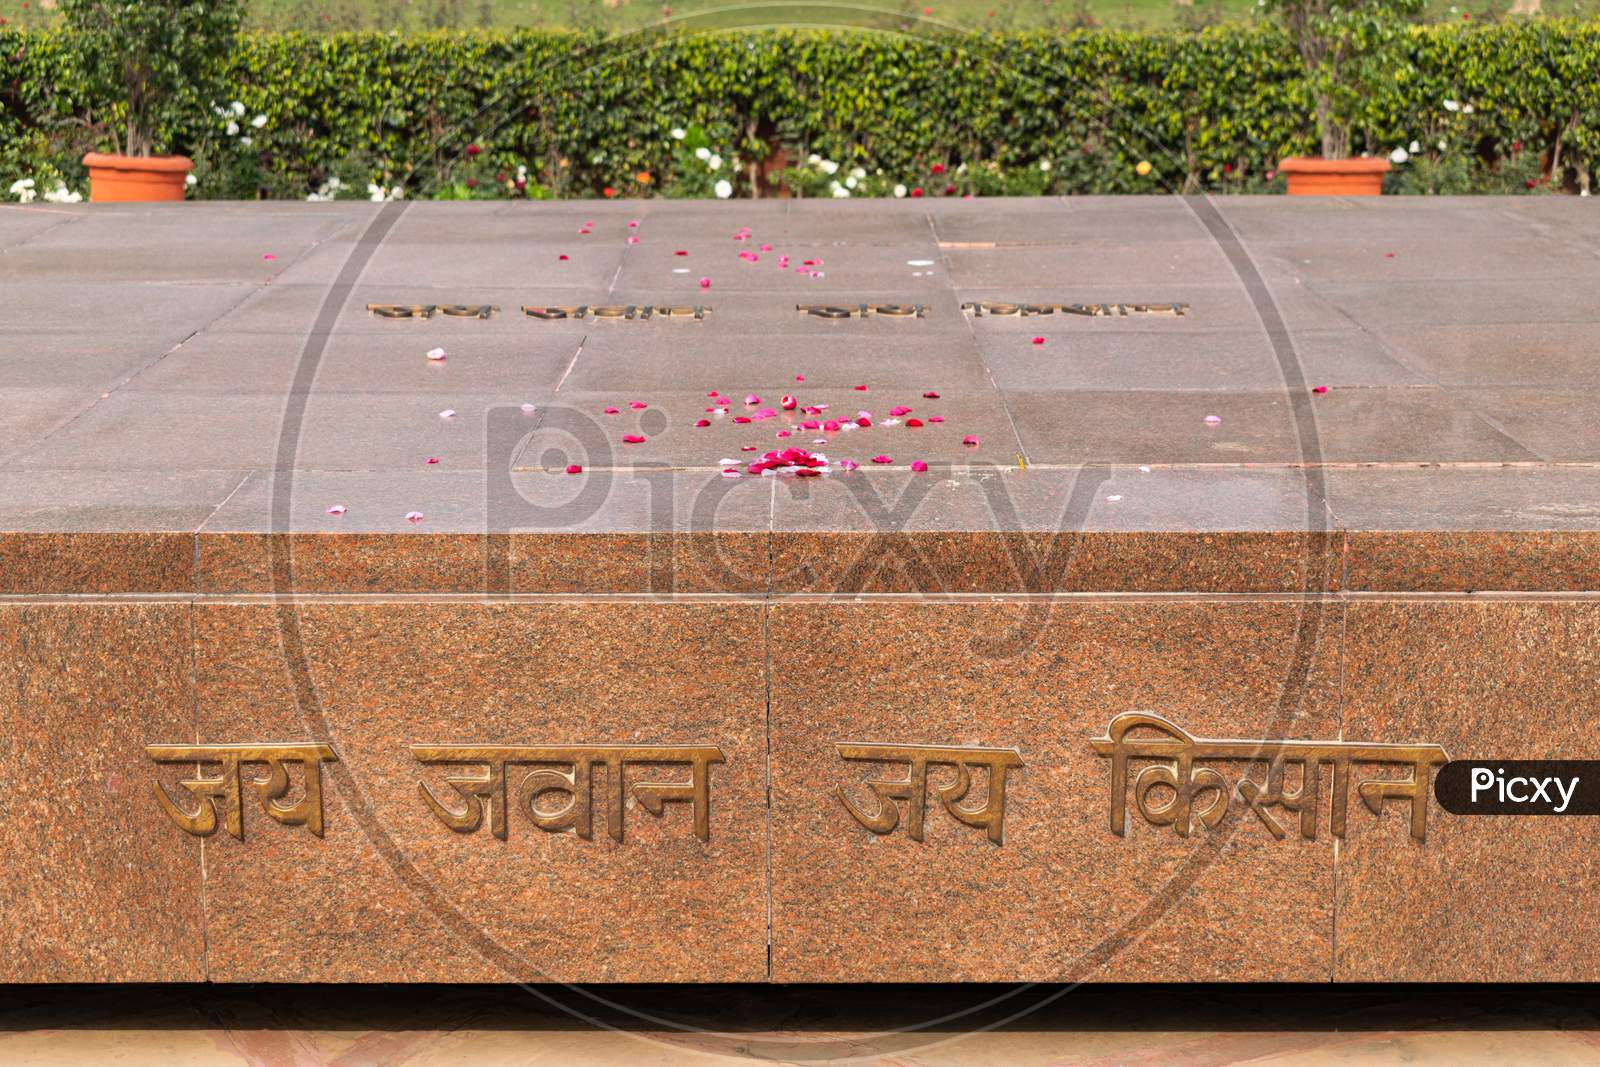 Jai Jawan Jai Kisan slogan put down on Samadhi, Vijay Ghat, of 2nd Prime Minister of India Sh. Lal Bahadur Shastri